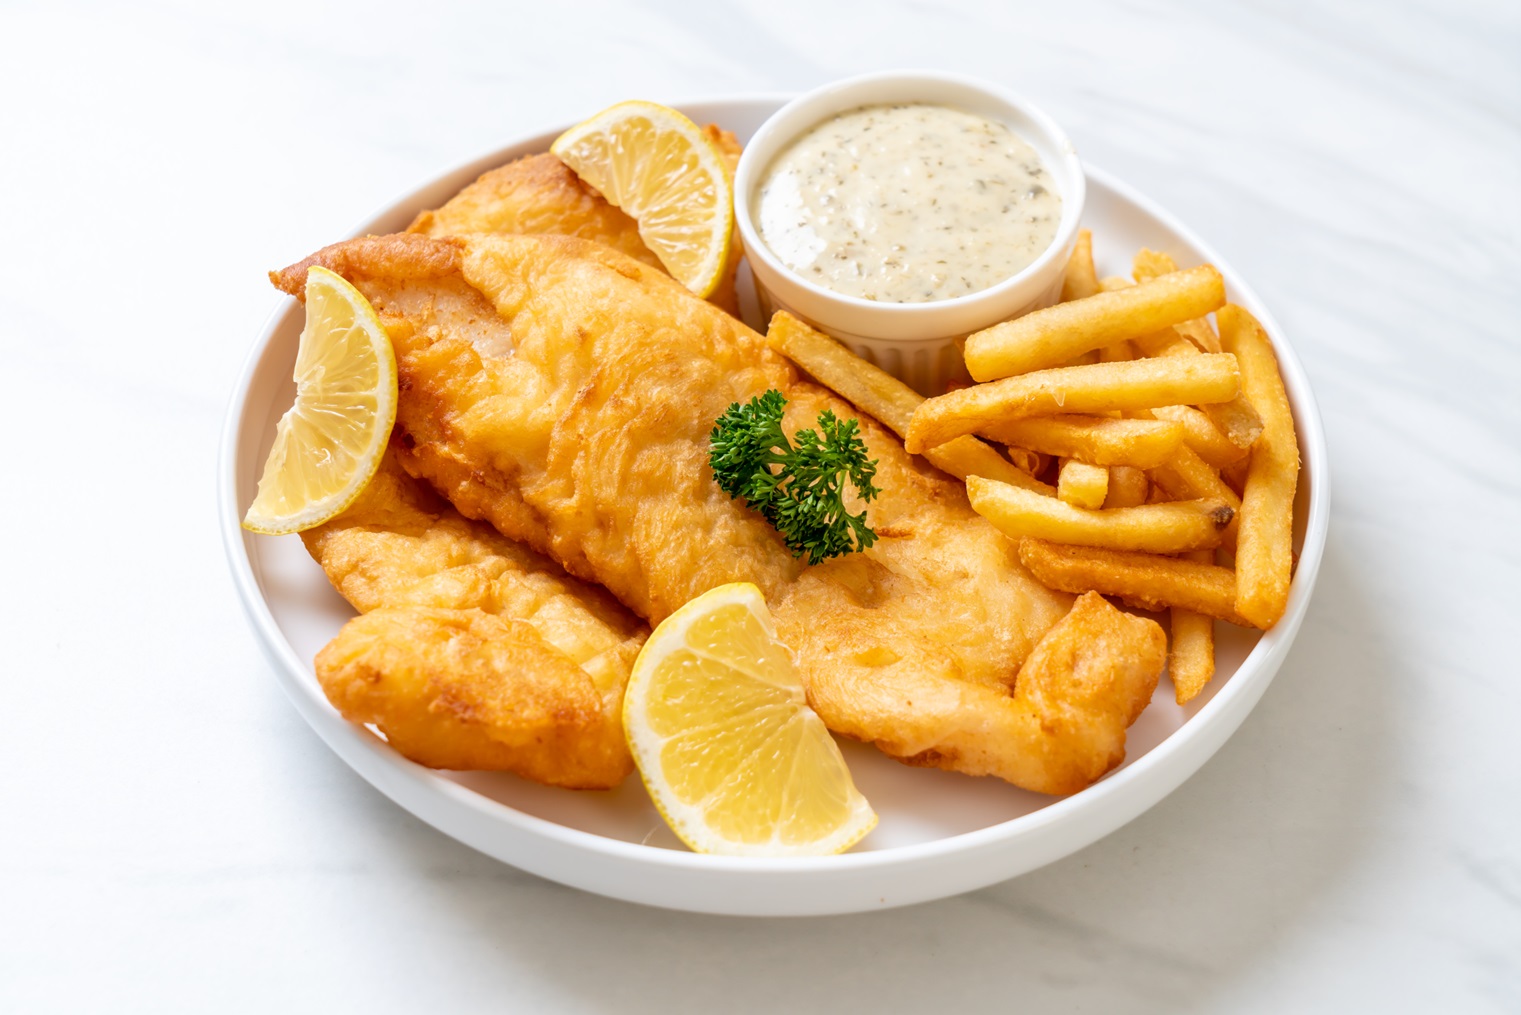 La nueva receta del Fish & Chips que triunfará en tu negocio